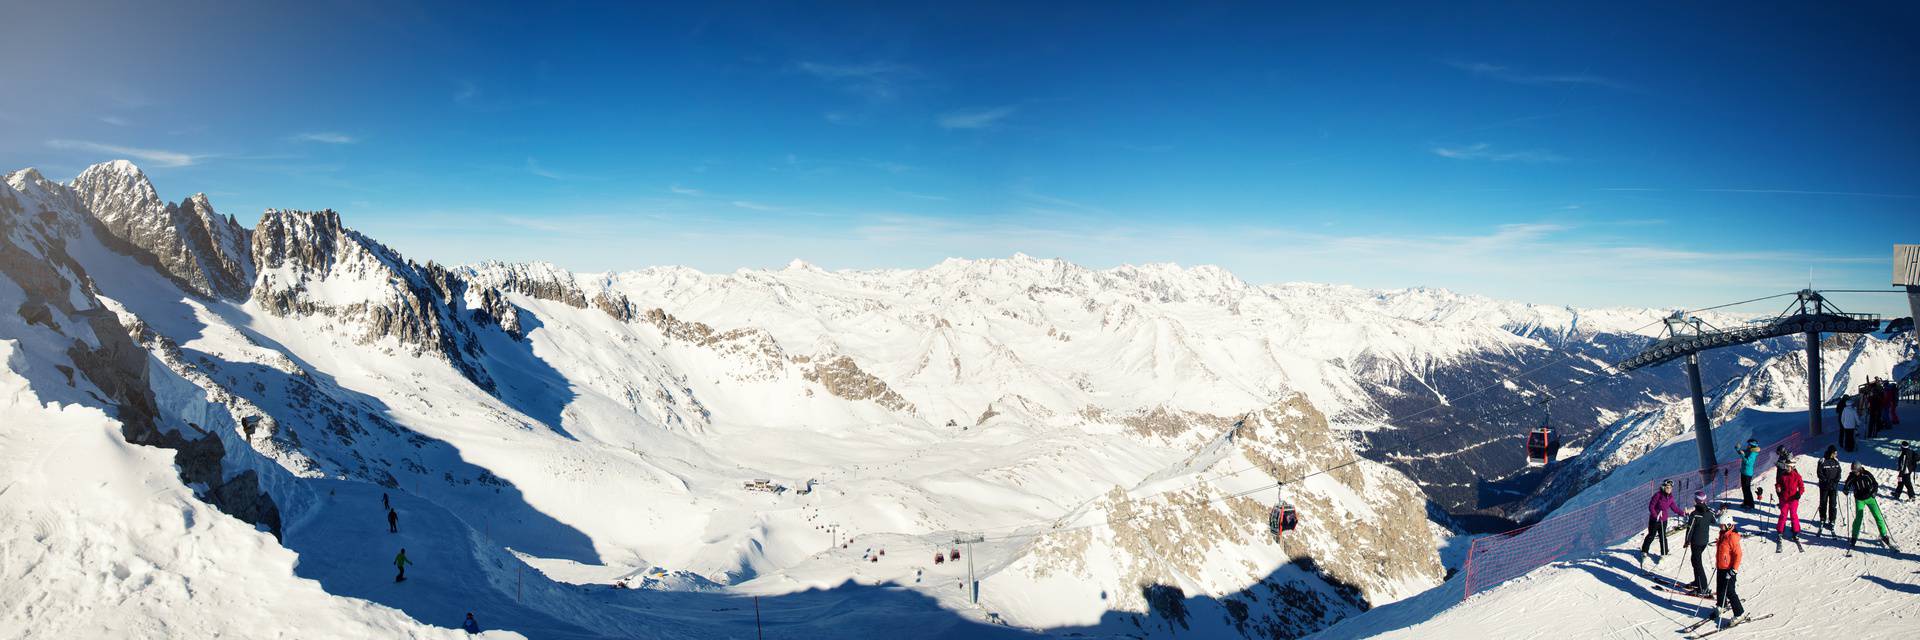 Italija sada nudi najjeftinija skijališta, pretekla je Bugarsku